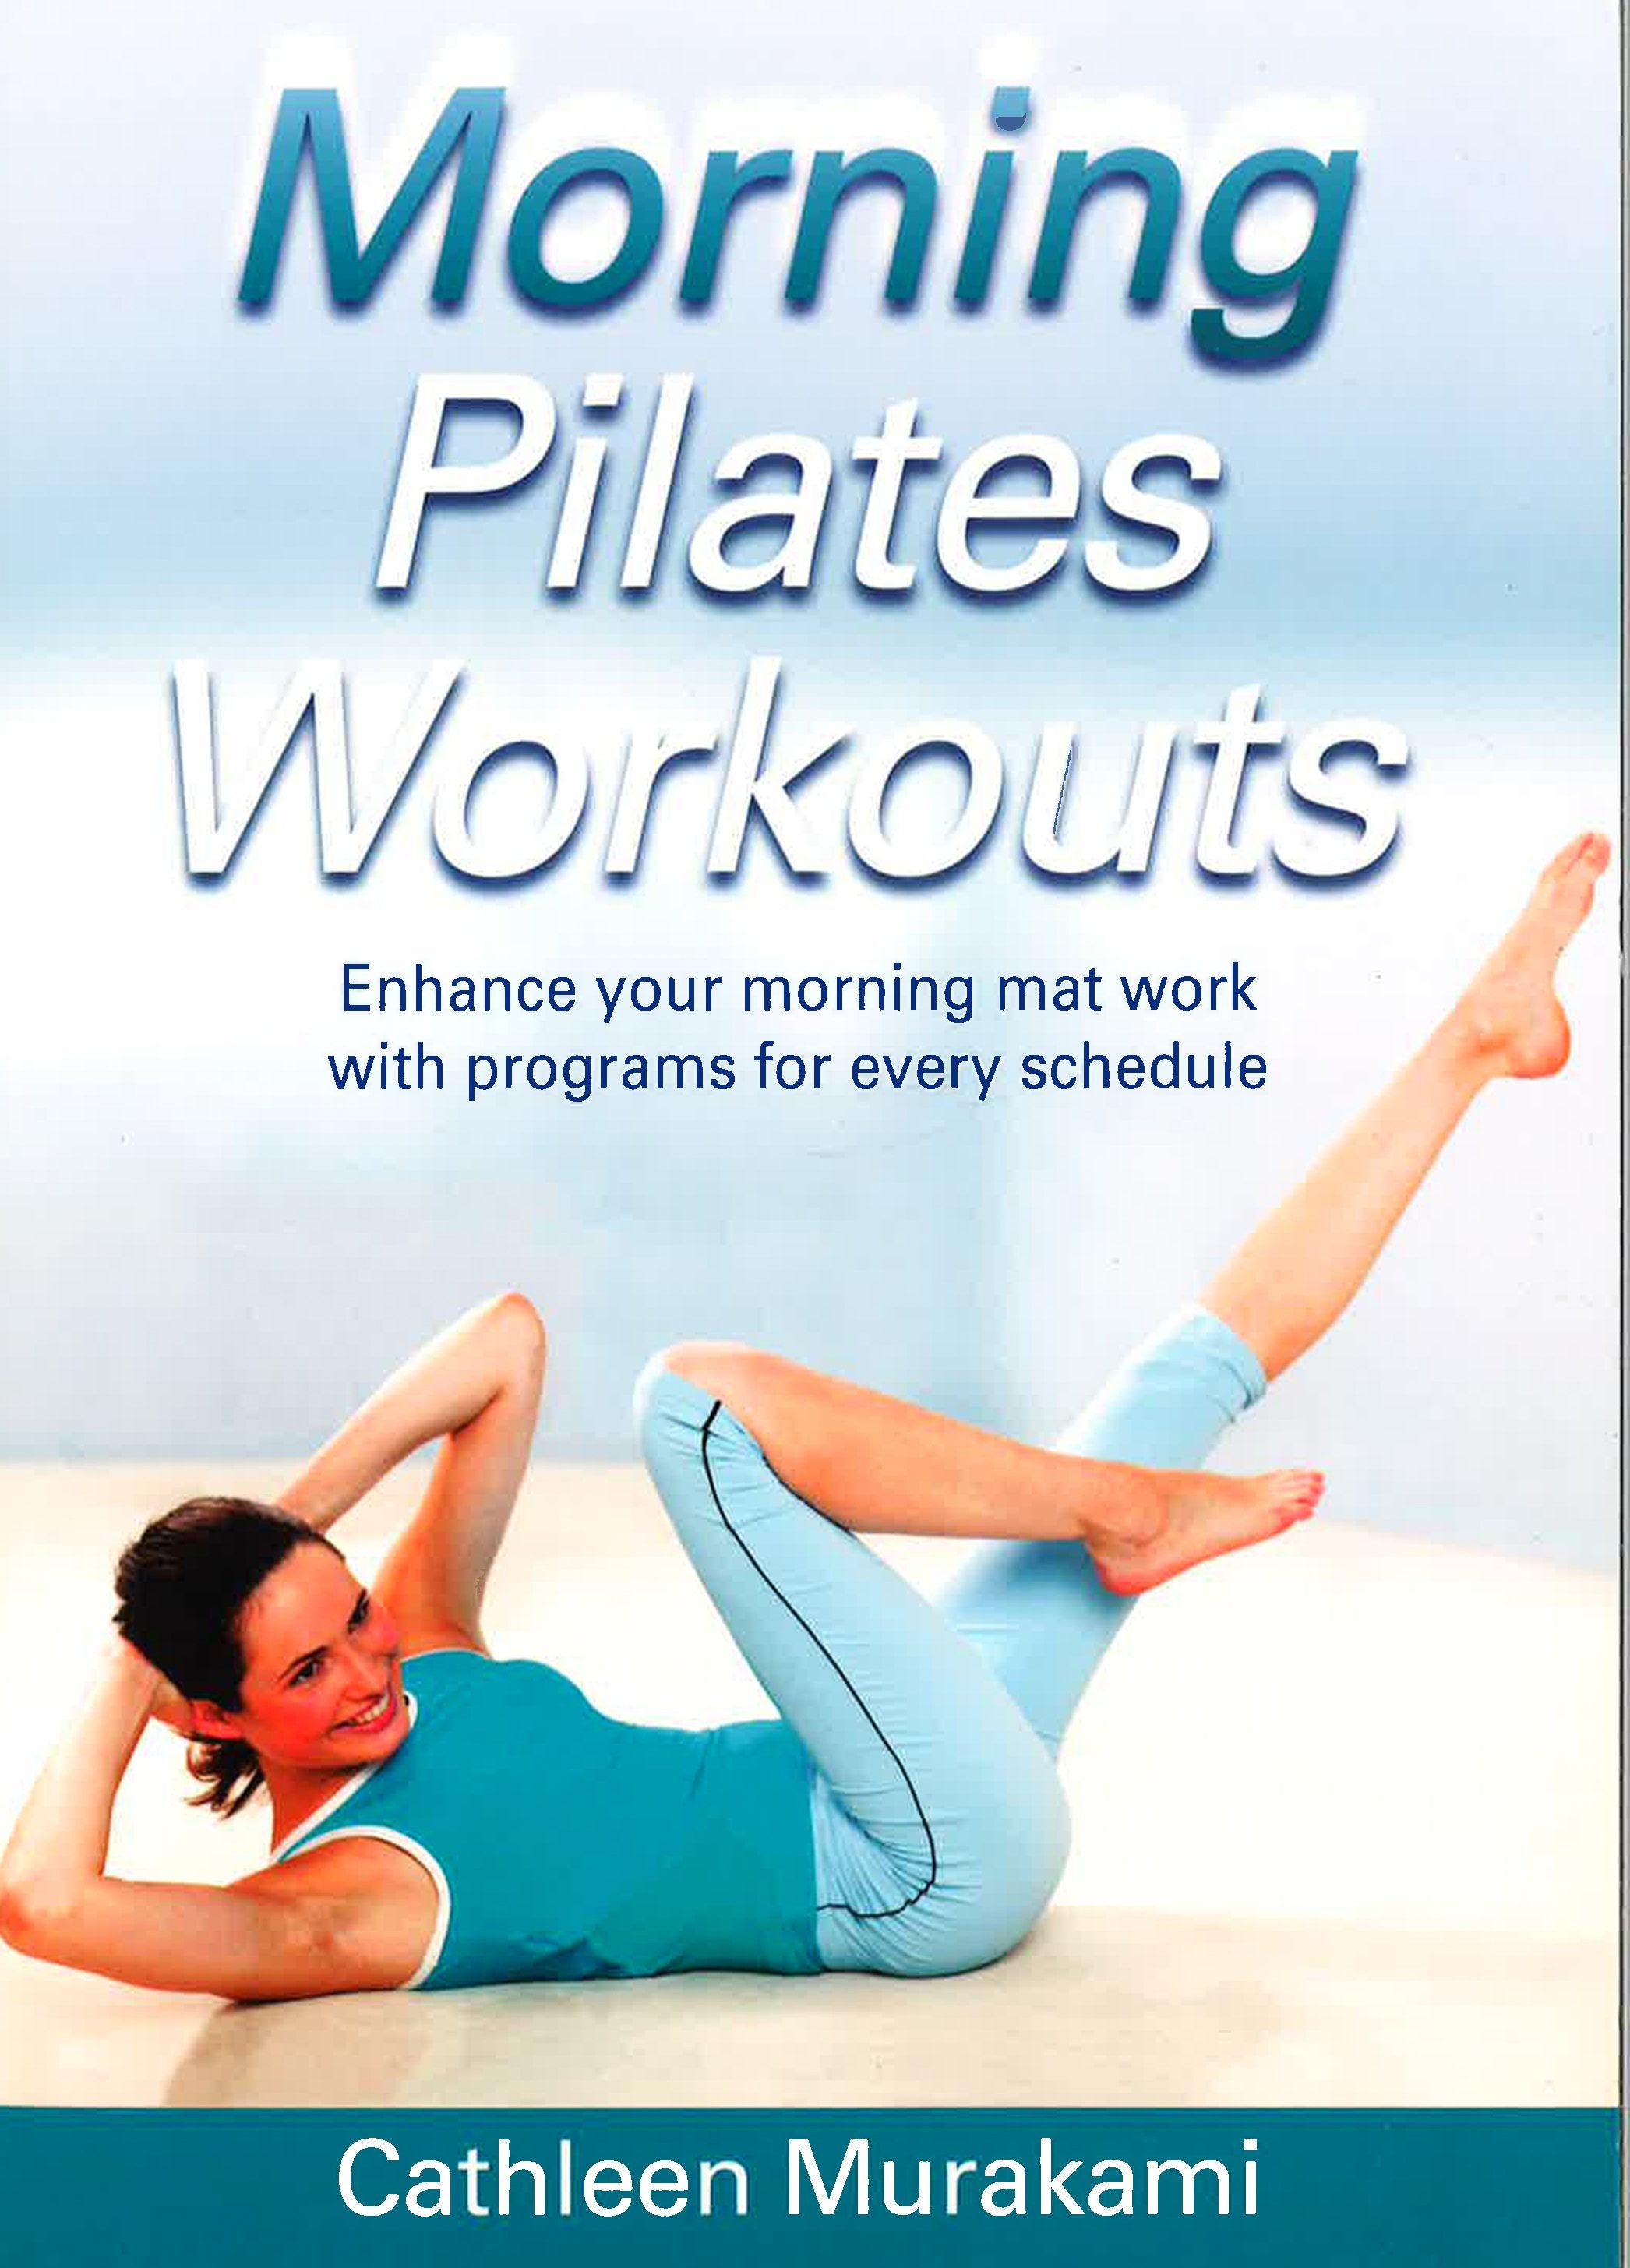 10 MIN EVERYDAY MORNING PILATES for strength // energy // motivation ( beginner) : r/exercisepostures